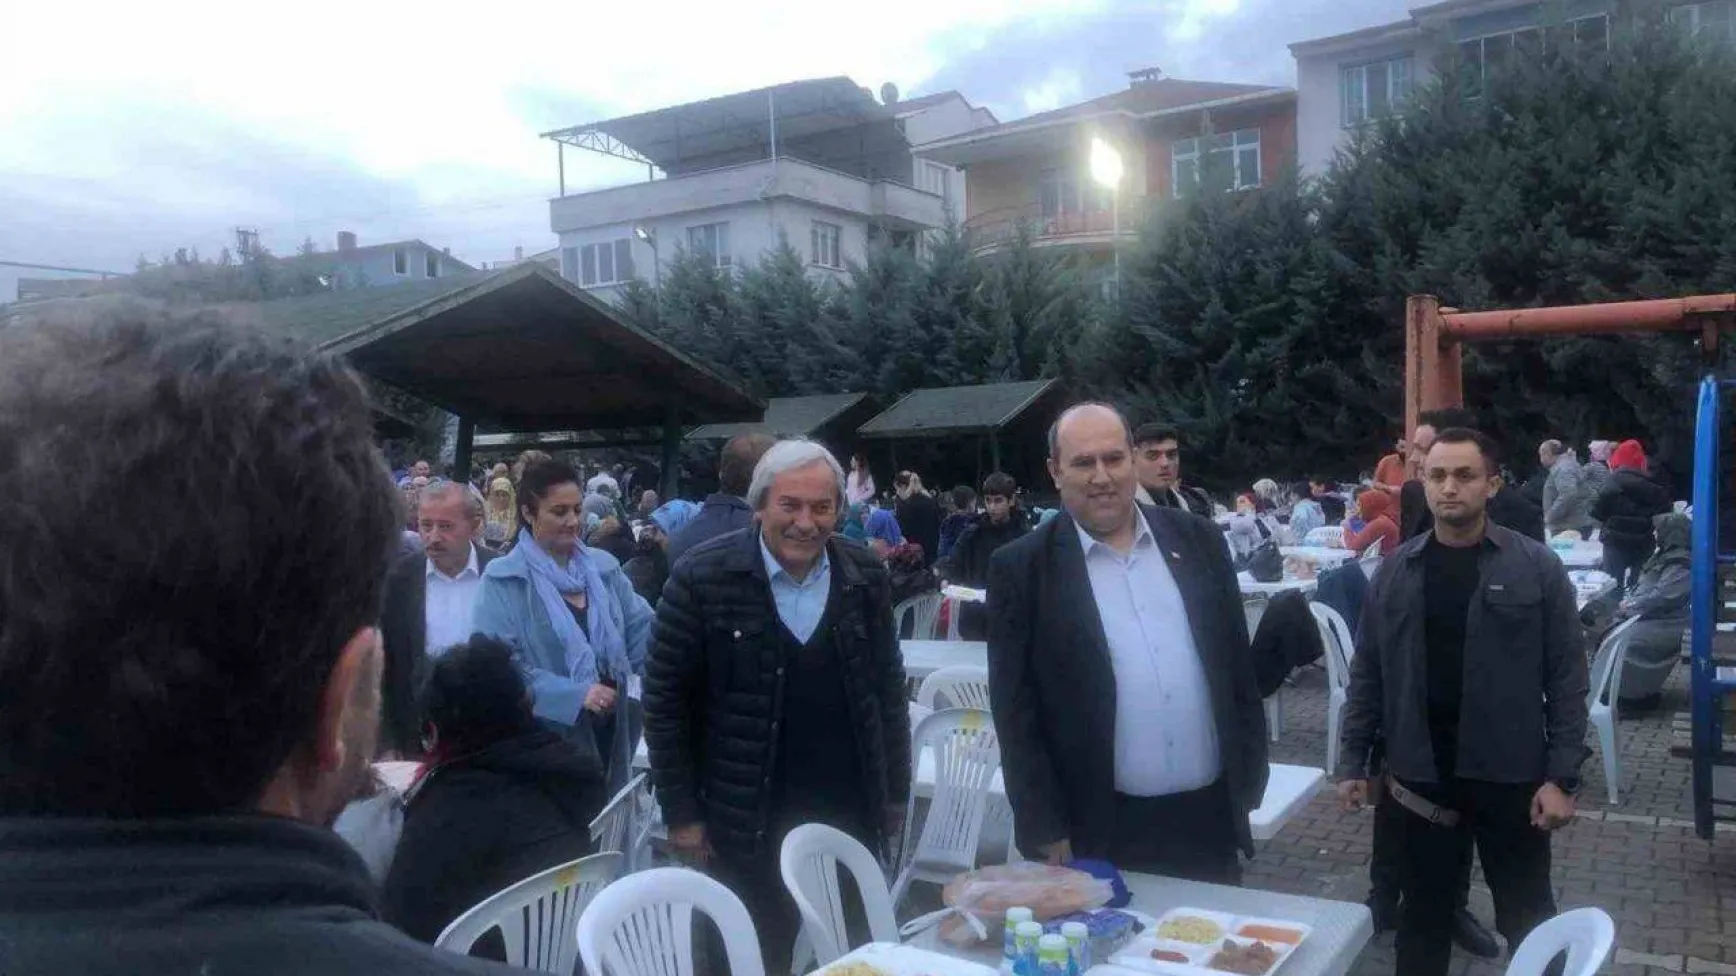 Osmaneli'de mahalle iftarları sona erdi